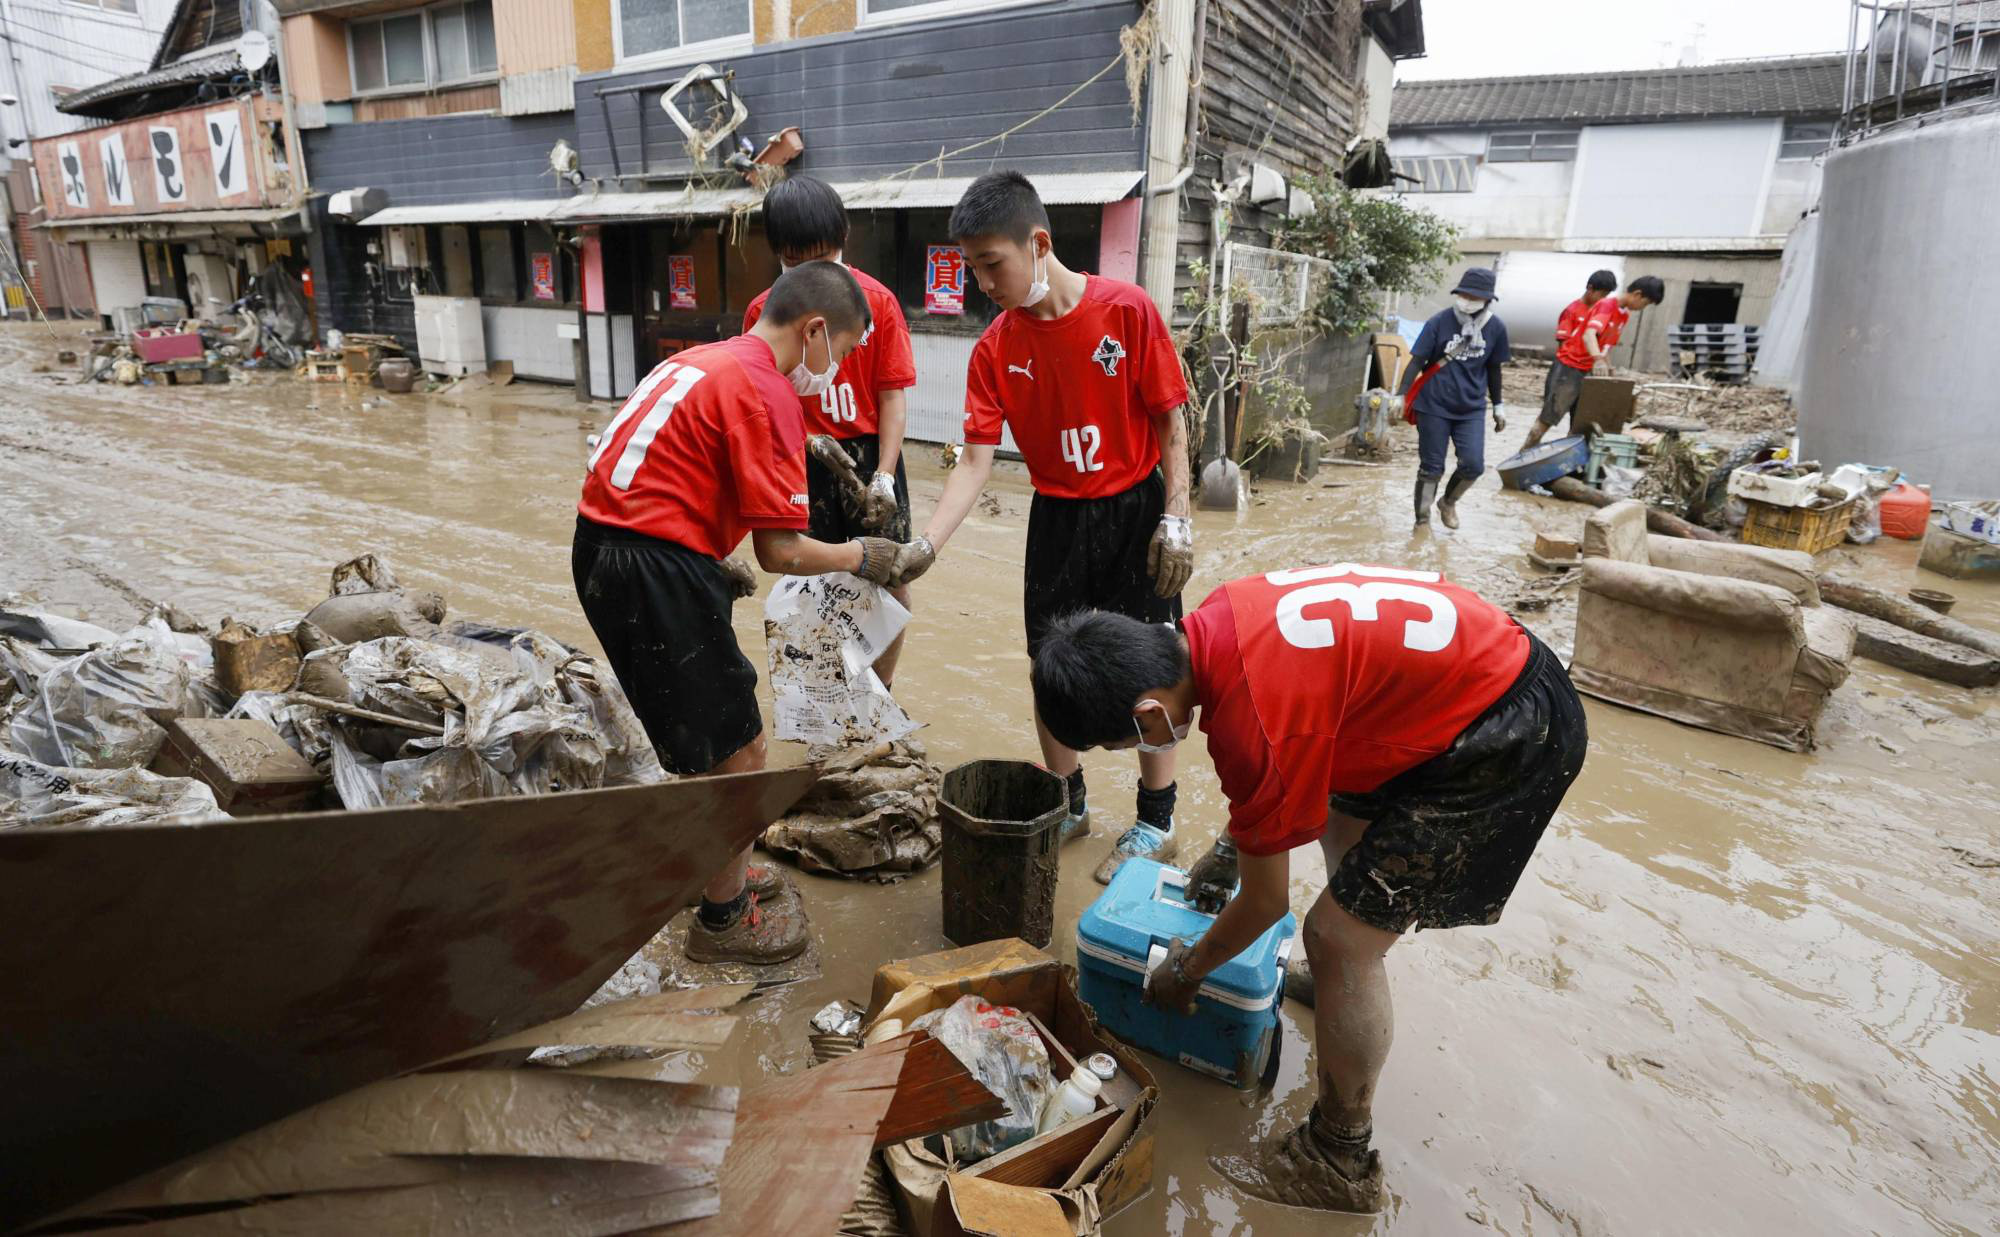 Chùm ảnh lũ lụt nhấn chìm viện dưỡng lão, nuốt chửng nhà dân khiến ít nhất 20 người thiệt mạng ở Nhật Bản - Ảnh 6.